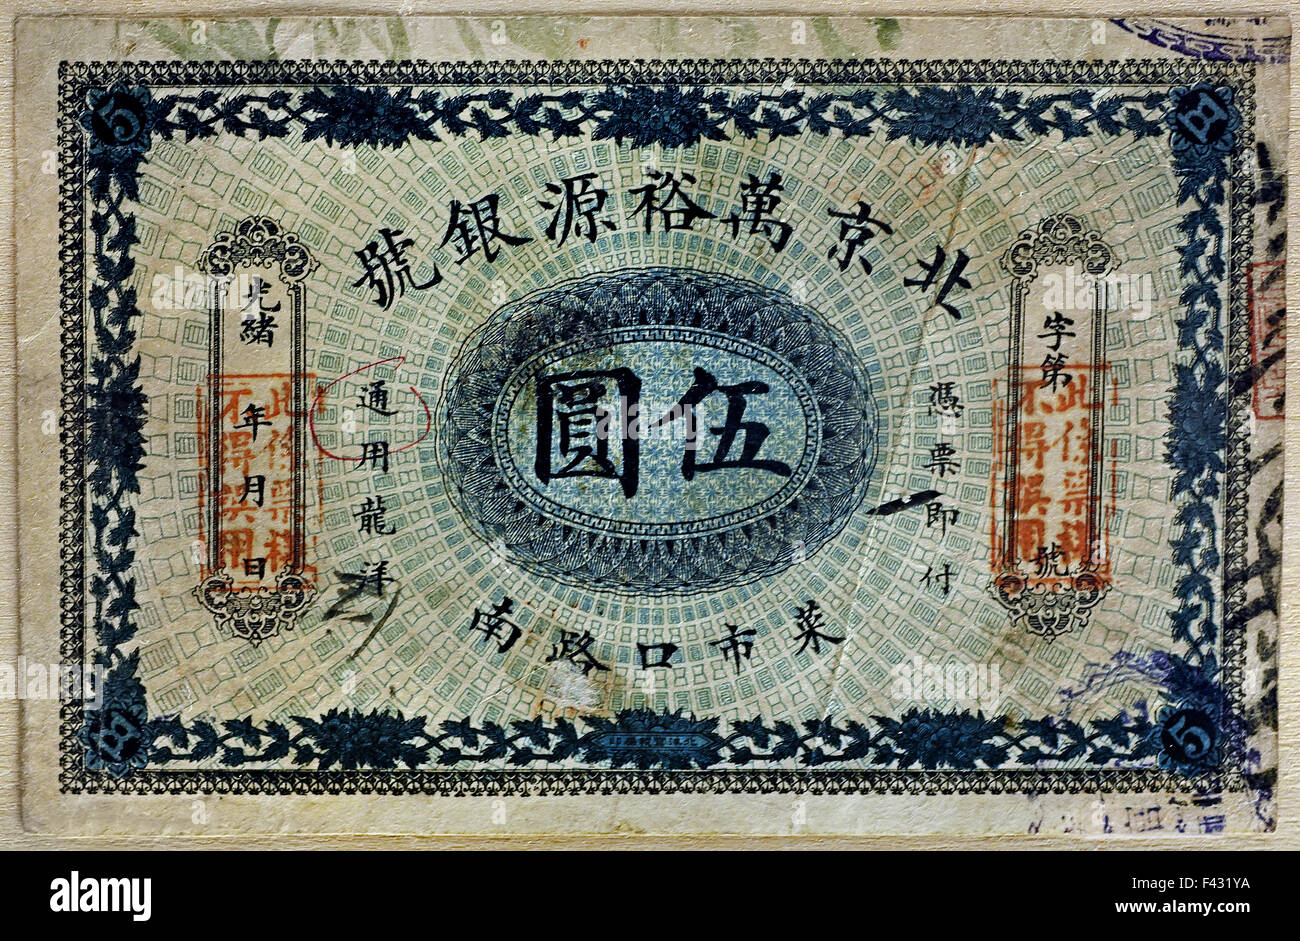 Papier-monnaie de la dynastie des Qing (1644-1911) Musée de Shanghai de l'ancien art chinois Chine Banque D'Images